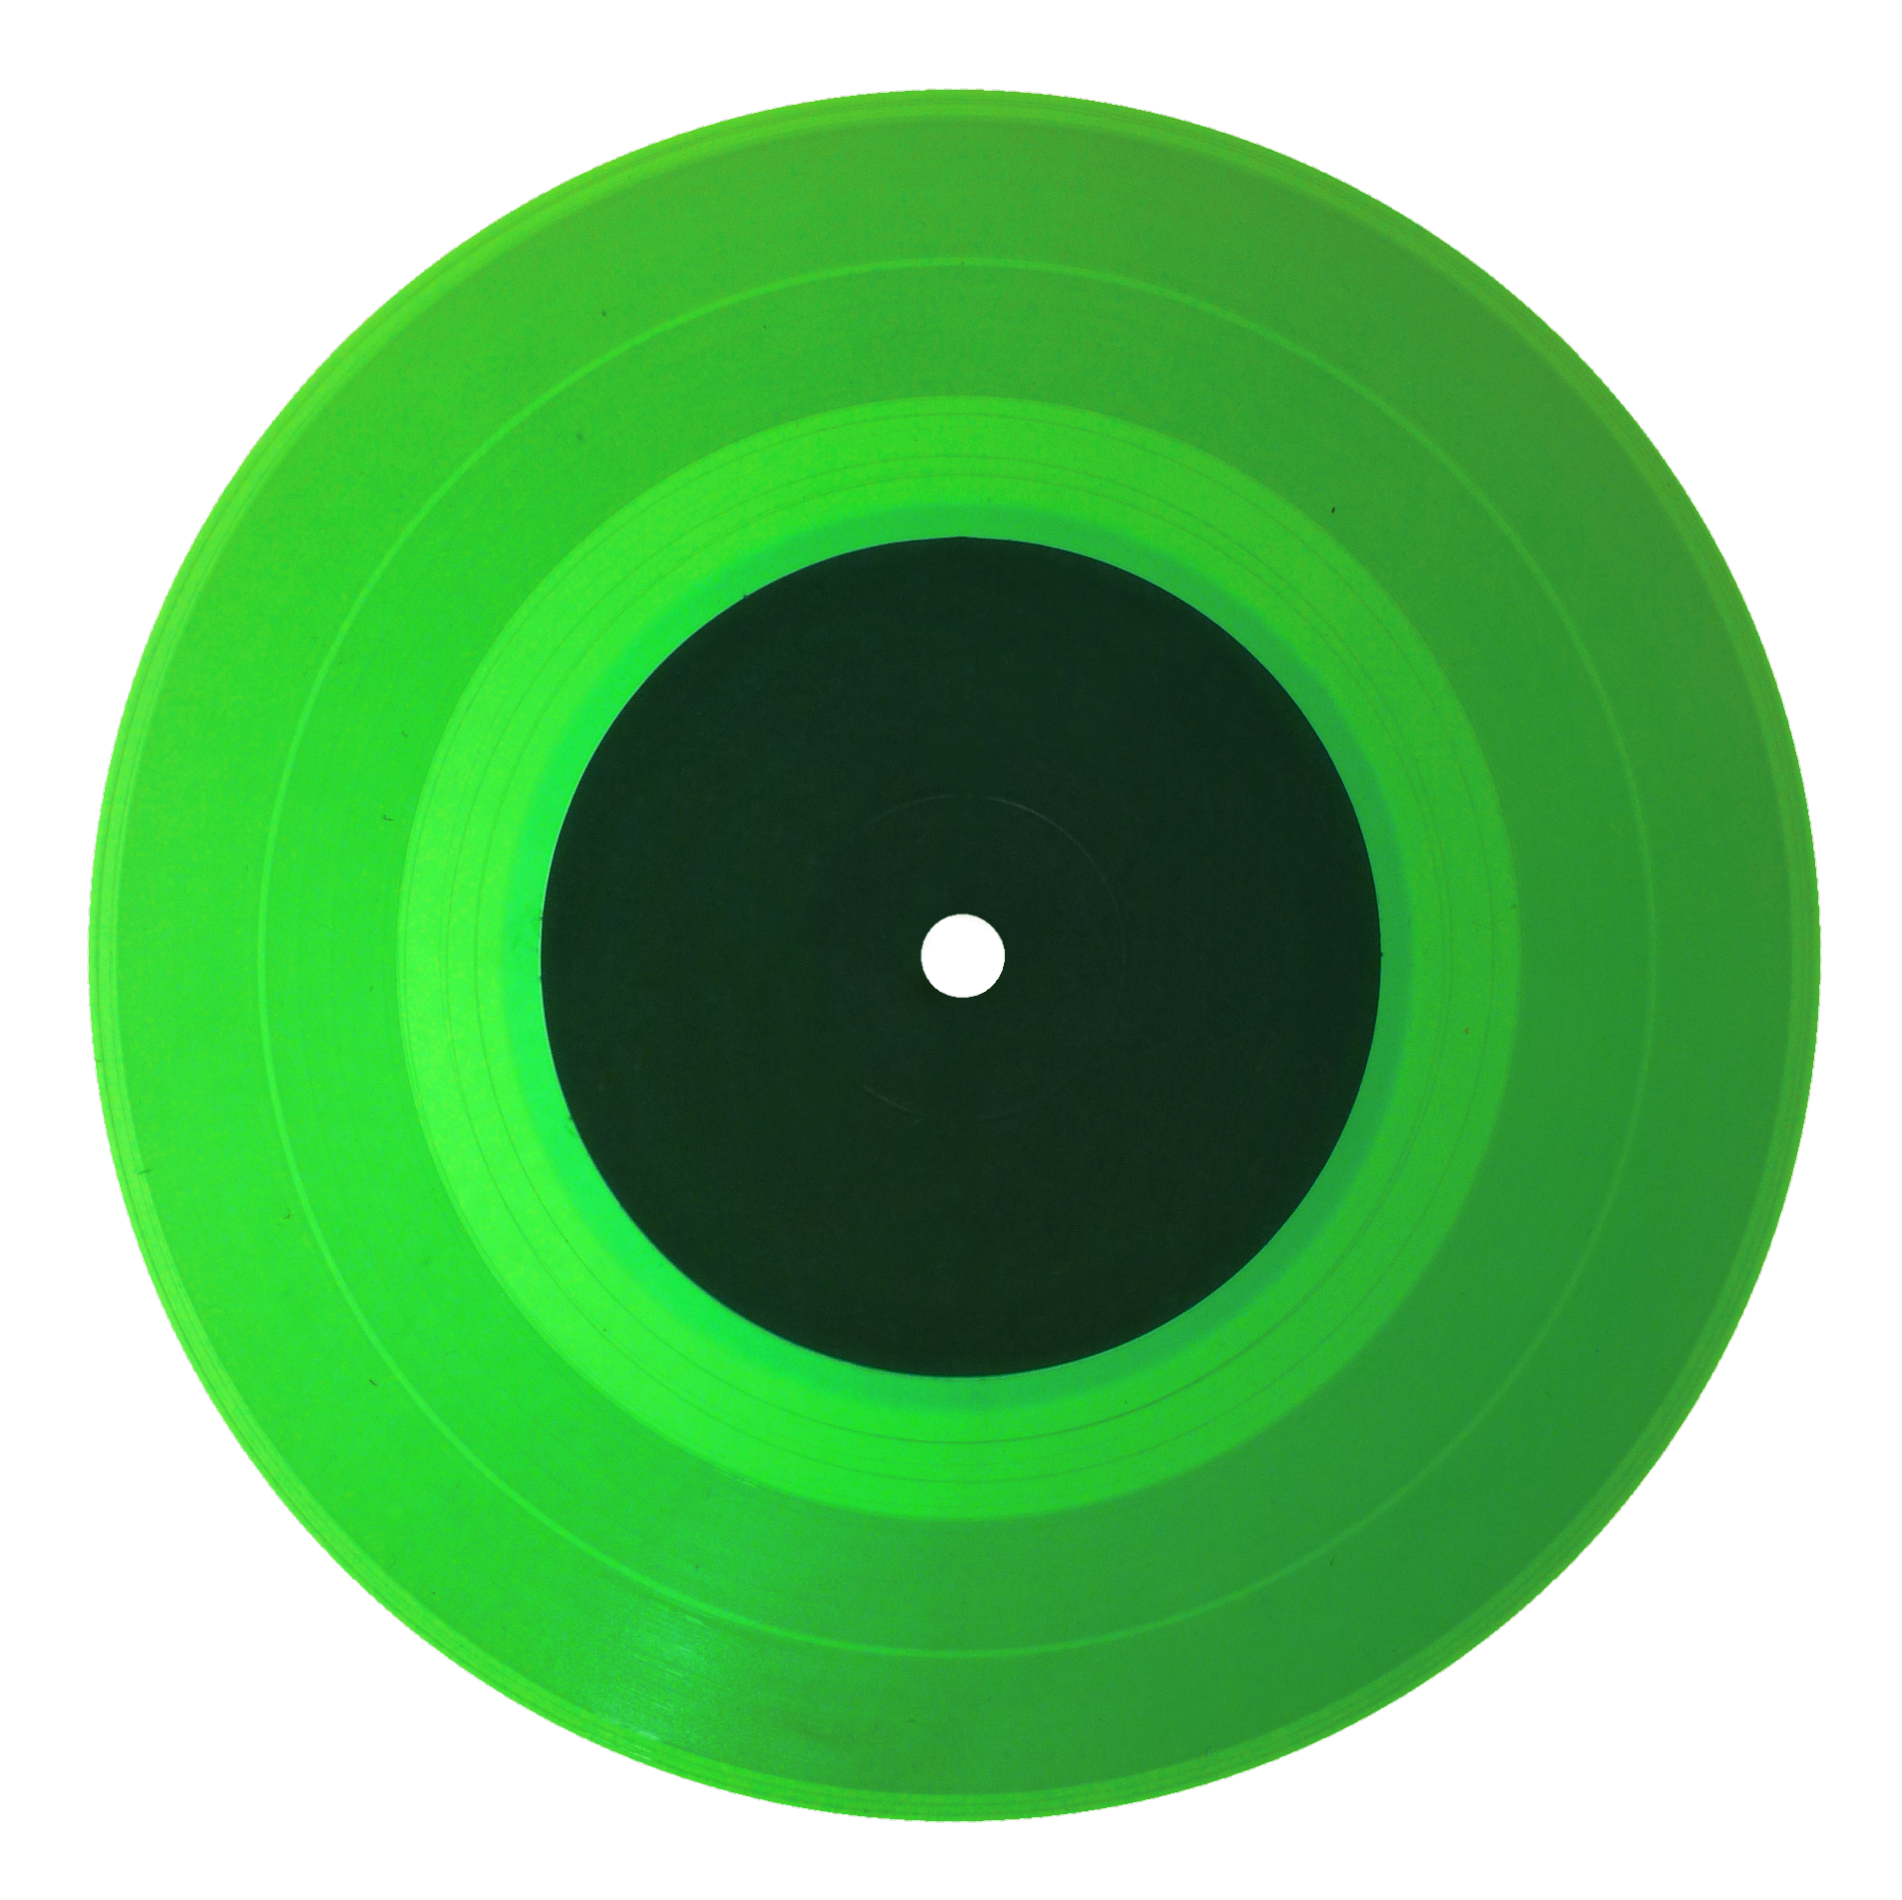 08 Colored record